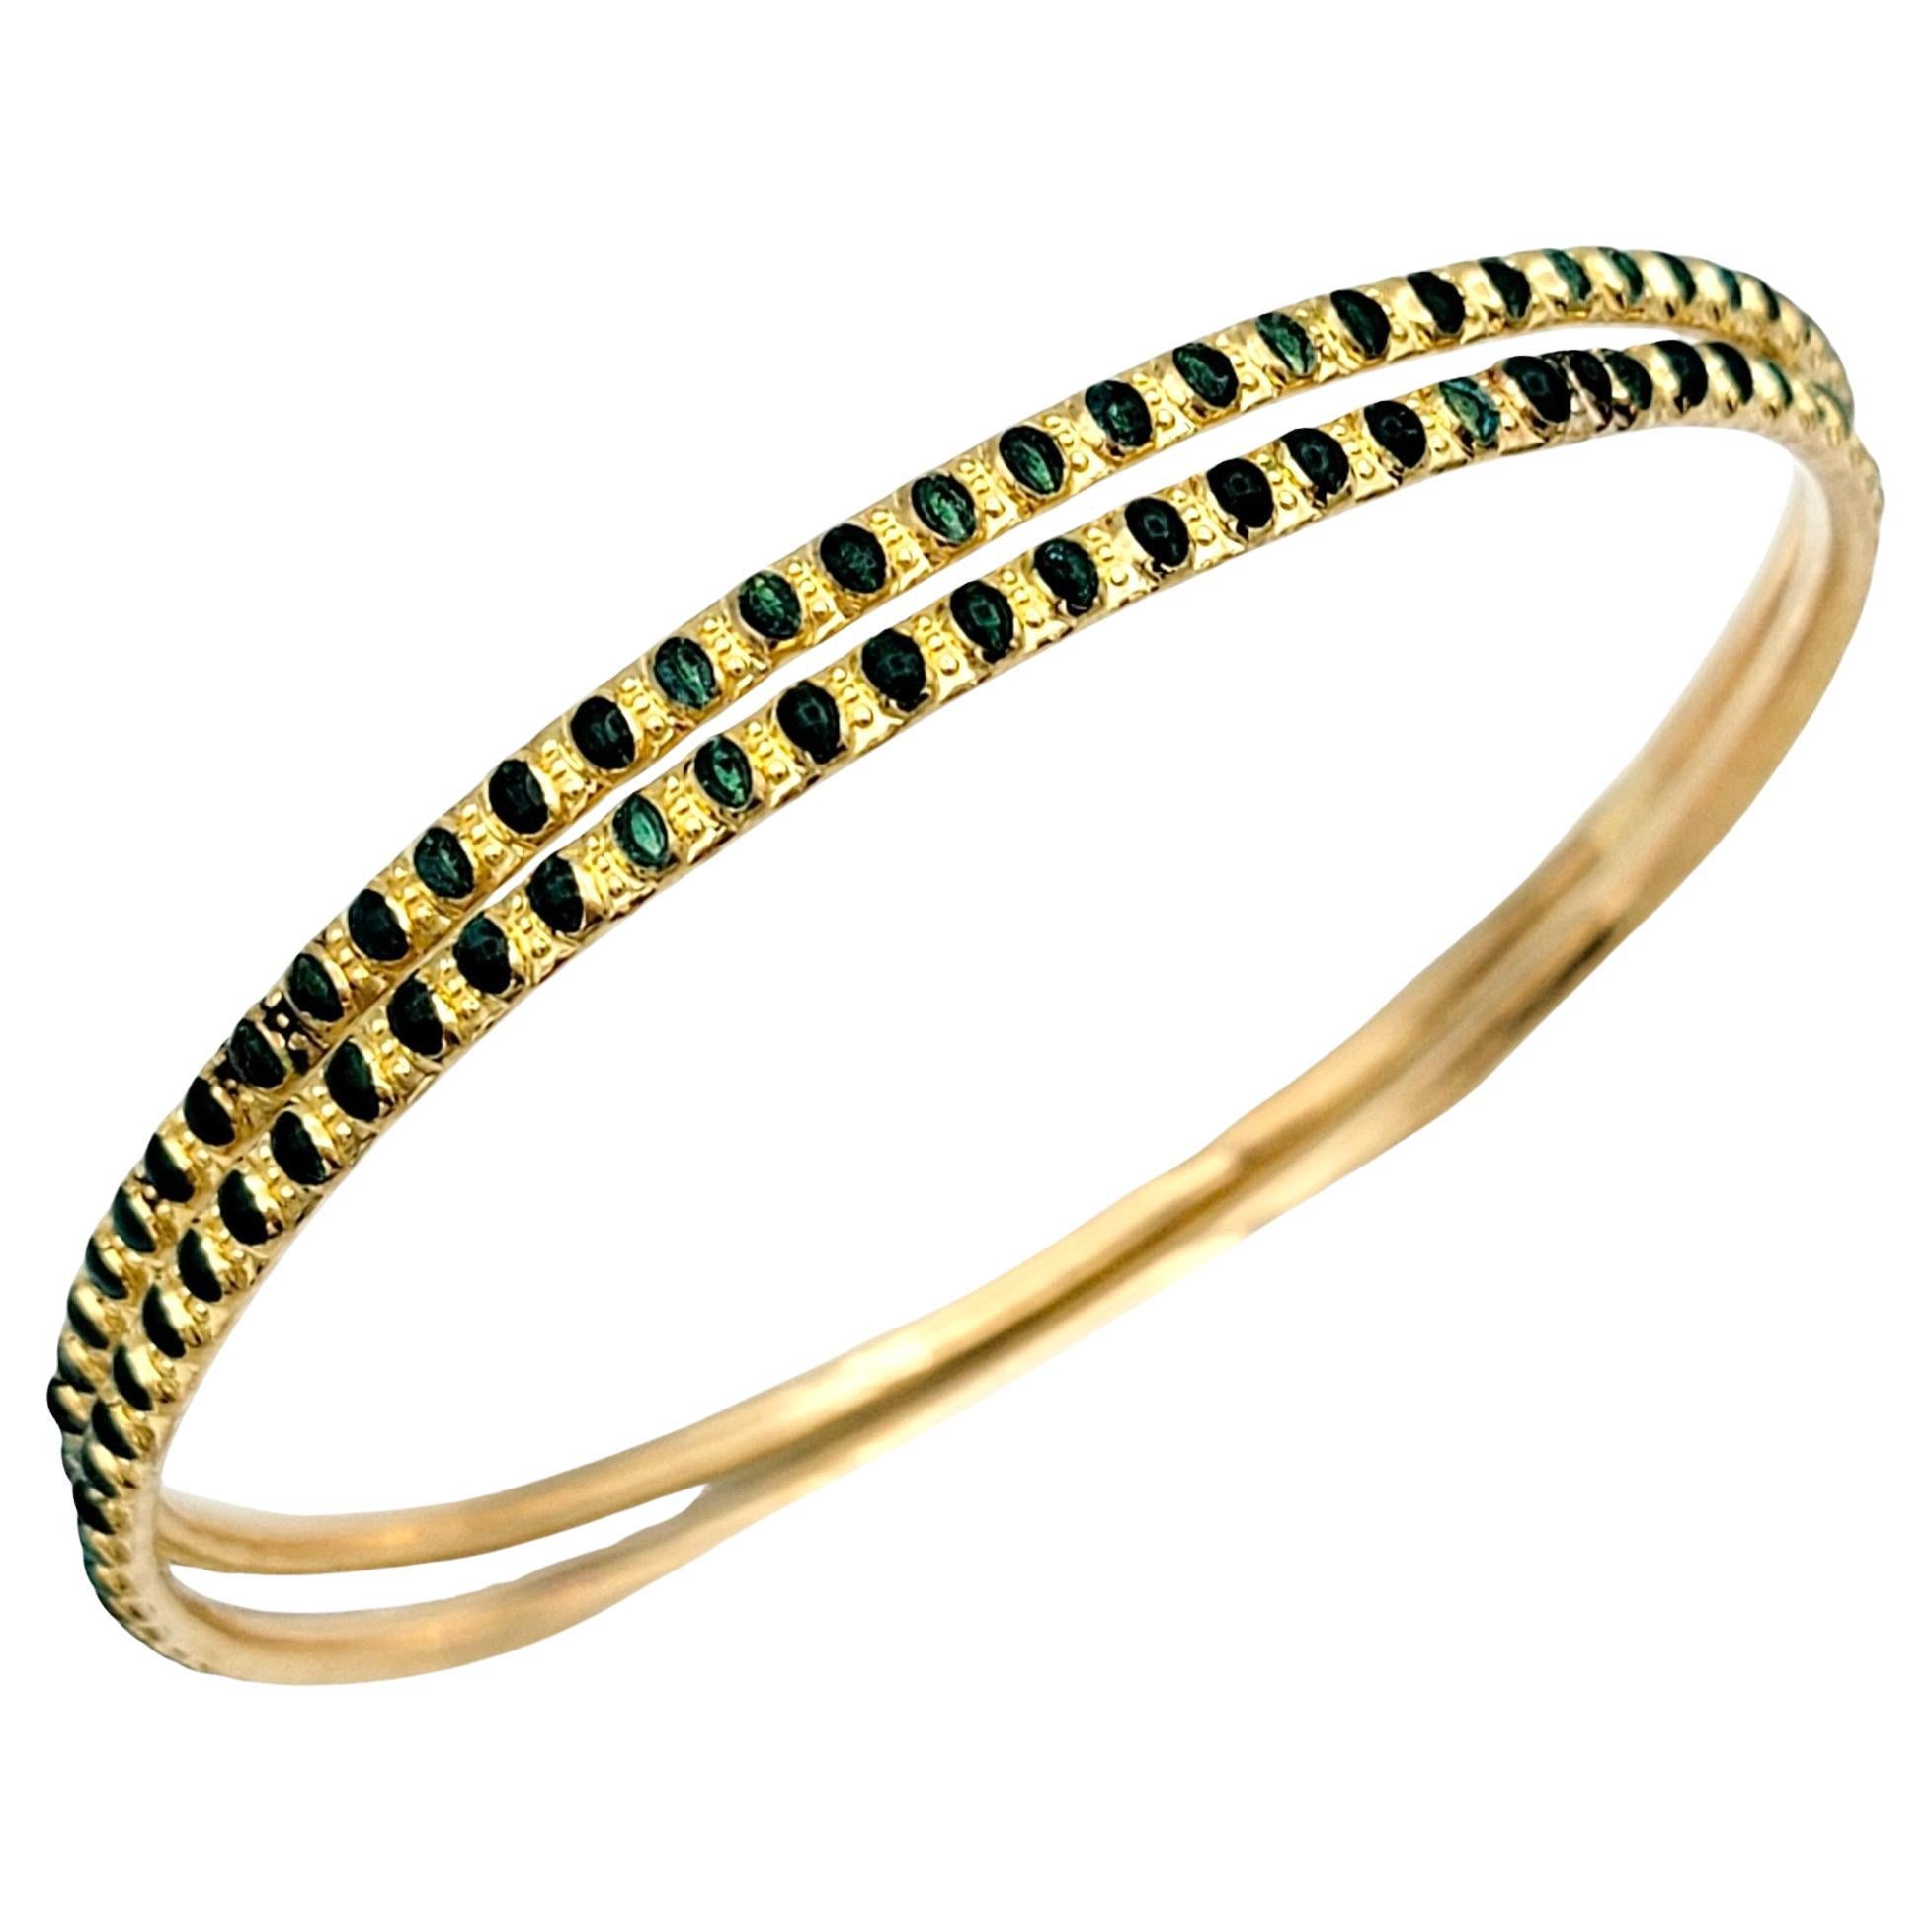 Set of 2 Stacking Bangle Bracelets Green Enamel Dot Design 22 Karat Yellow Gold